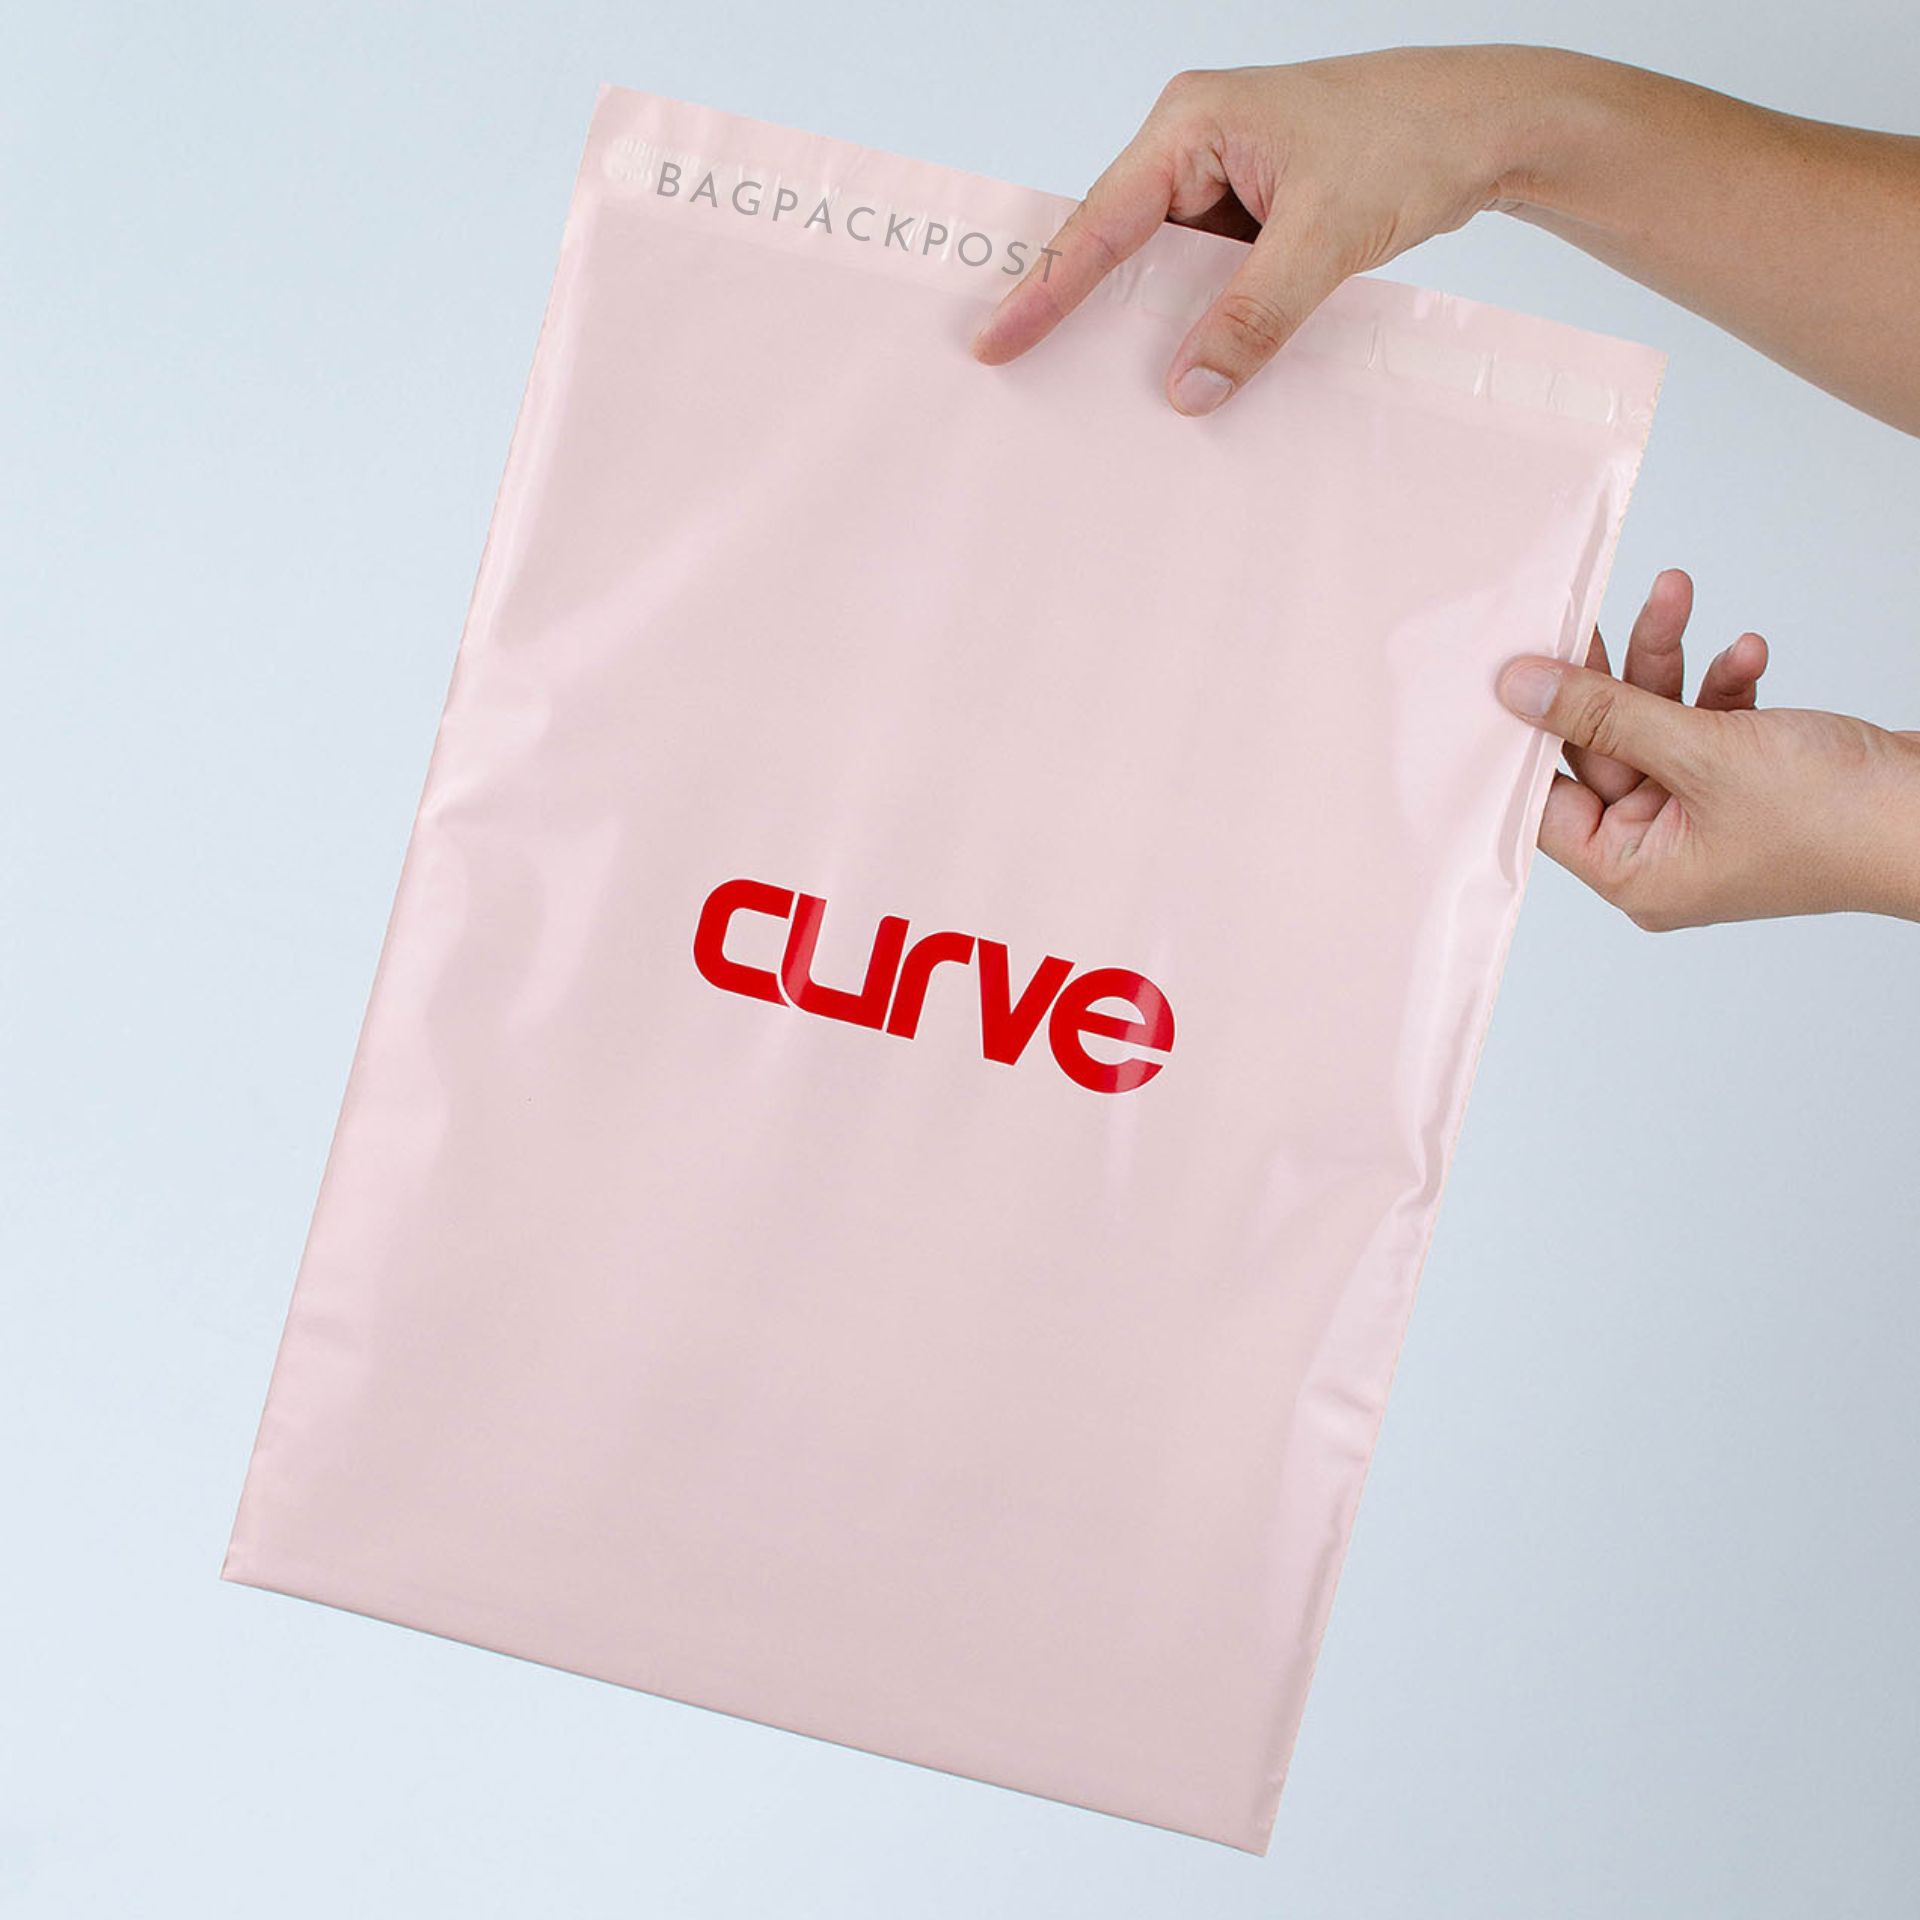 ผลิตถุงไปรษณีย์ ซองไปรษณีย์พิมพ์ลาย ถุงพัสดุ ถุงไปรษณีย์พิมพ์ลาย  ซองพิมพ์ลาย สีชมพู CURVE ส่งด่วน งานคุณภาพ | BagPackPost